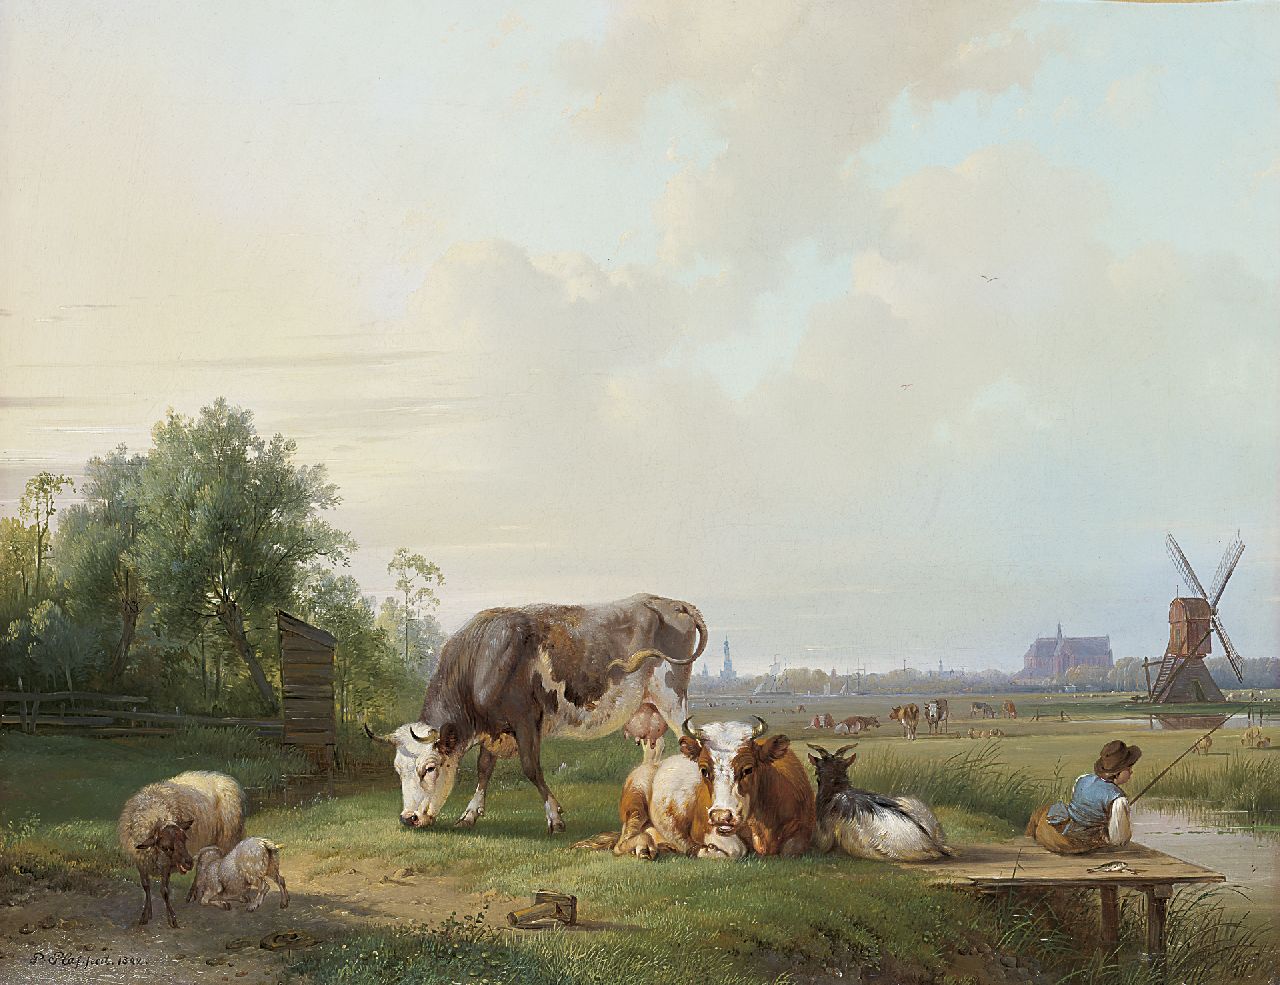 Plas P.  | Pieter Plas | Schilderijen te koop aangeboden | Rustend vee en hengelaar in een pastoraal landschap, Alkmaar in het verschiet, olieverf op doek 44,4 x 55,2 cm, gesigneerd linksonder en gedateerd 1842